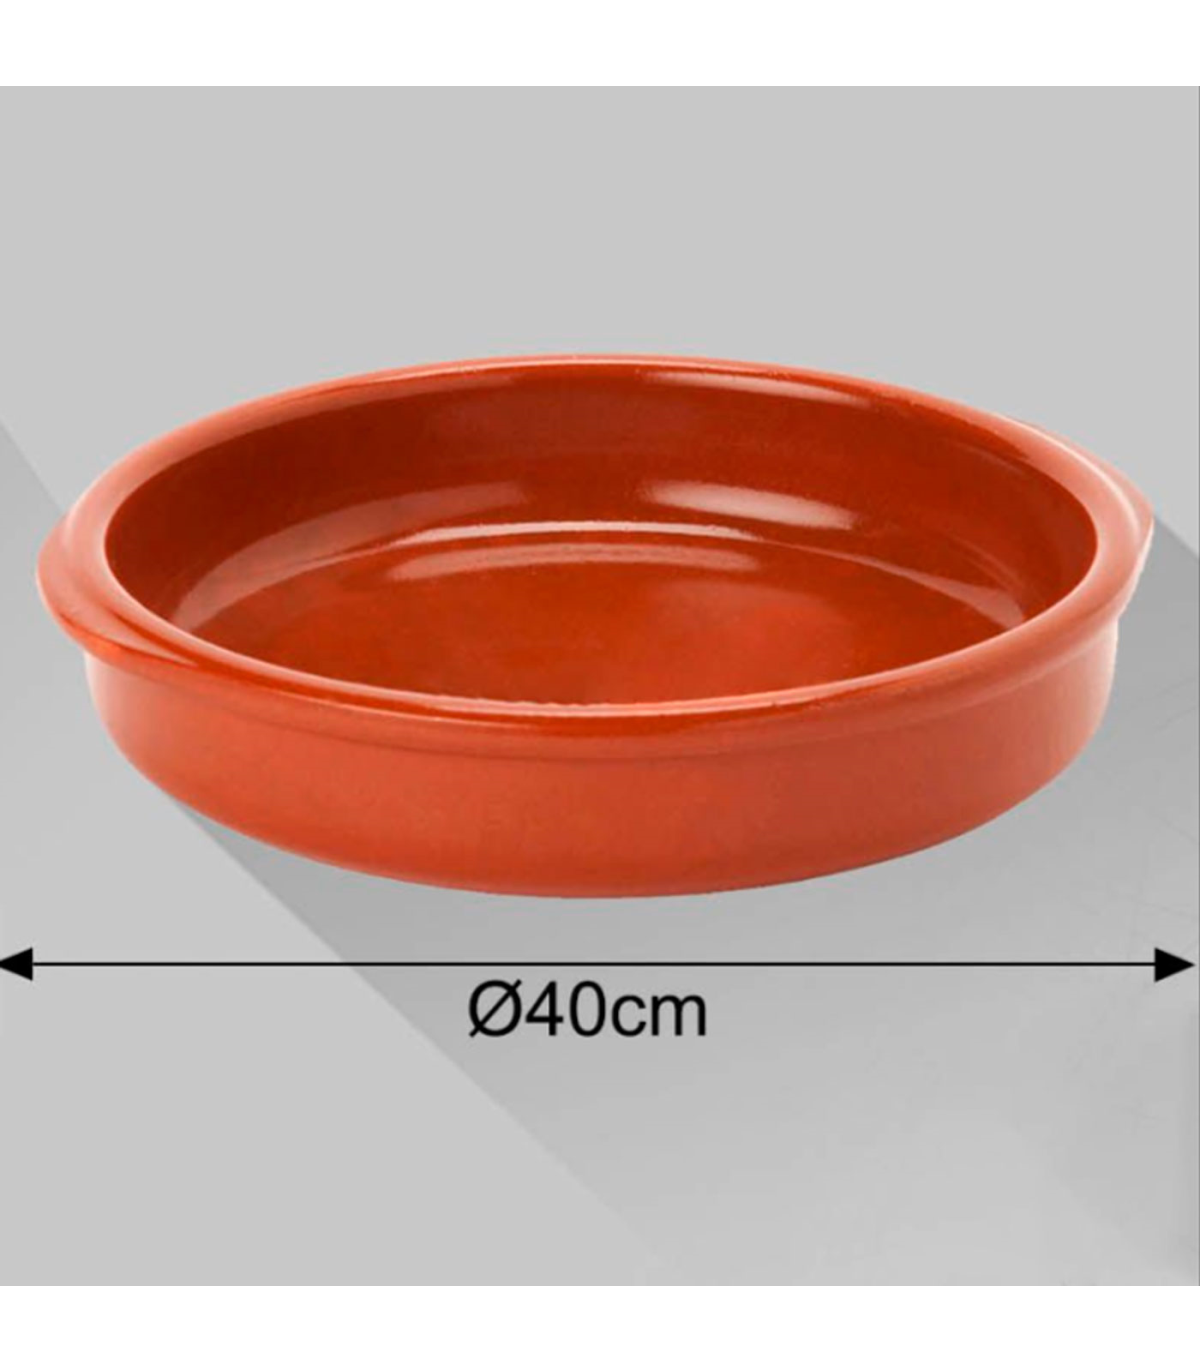 Tradineur - Cazuela redonda de barro - Apta para vitro y horno - Ideal para  guisos y asados caseros – Ø 40 cm